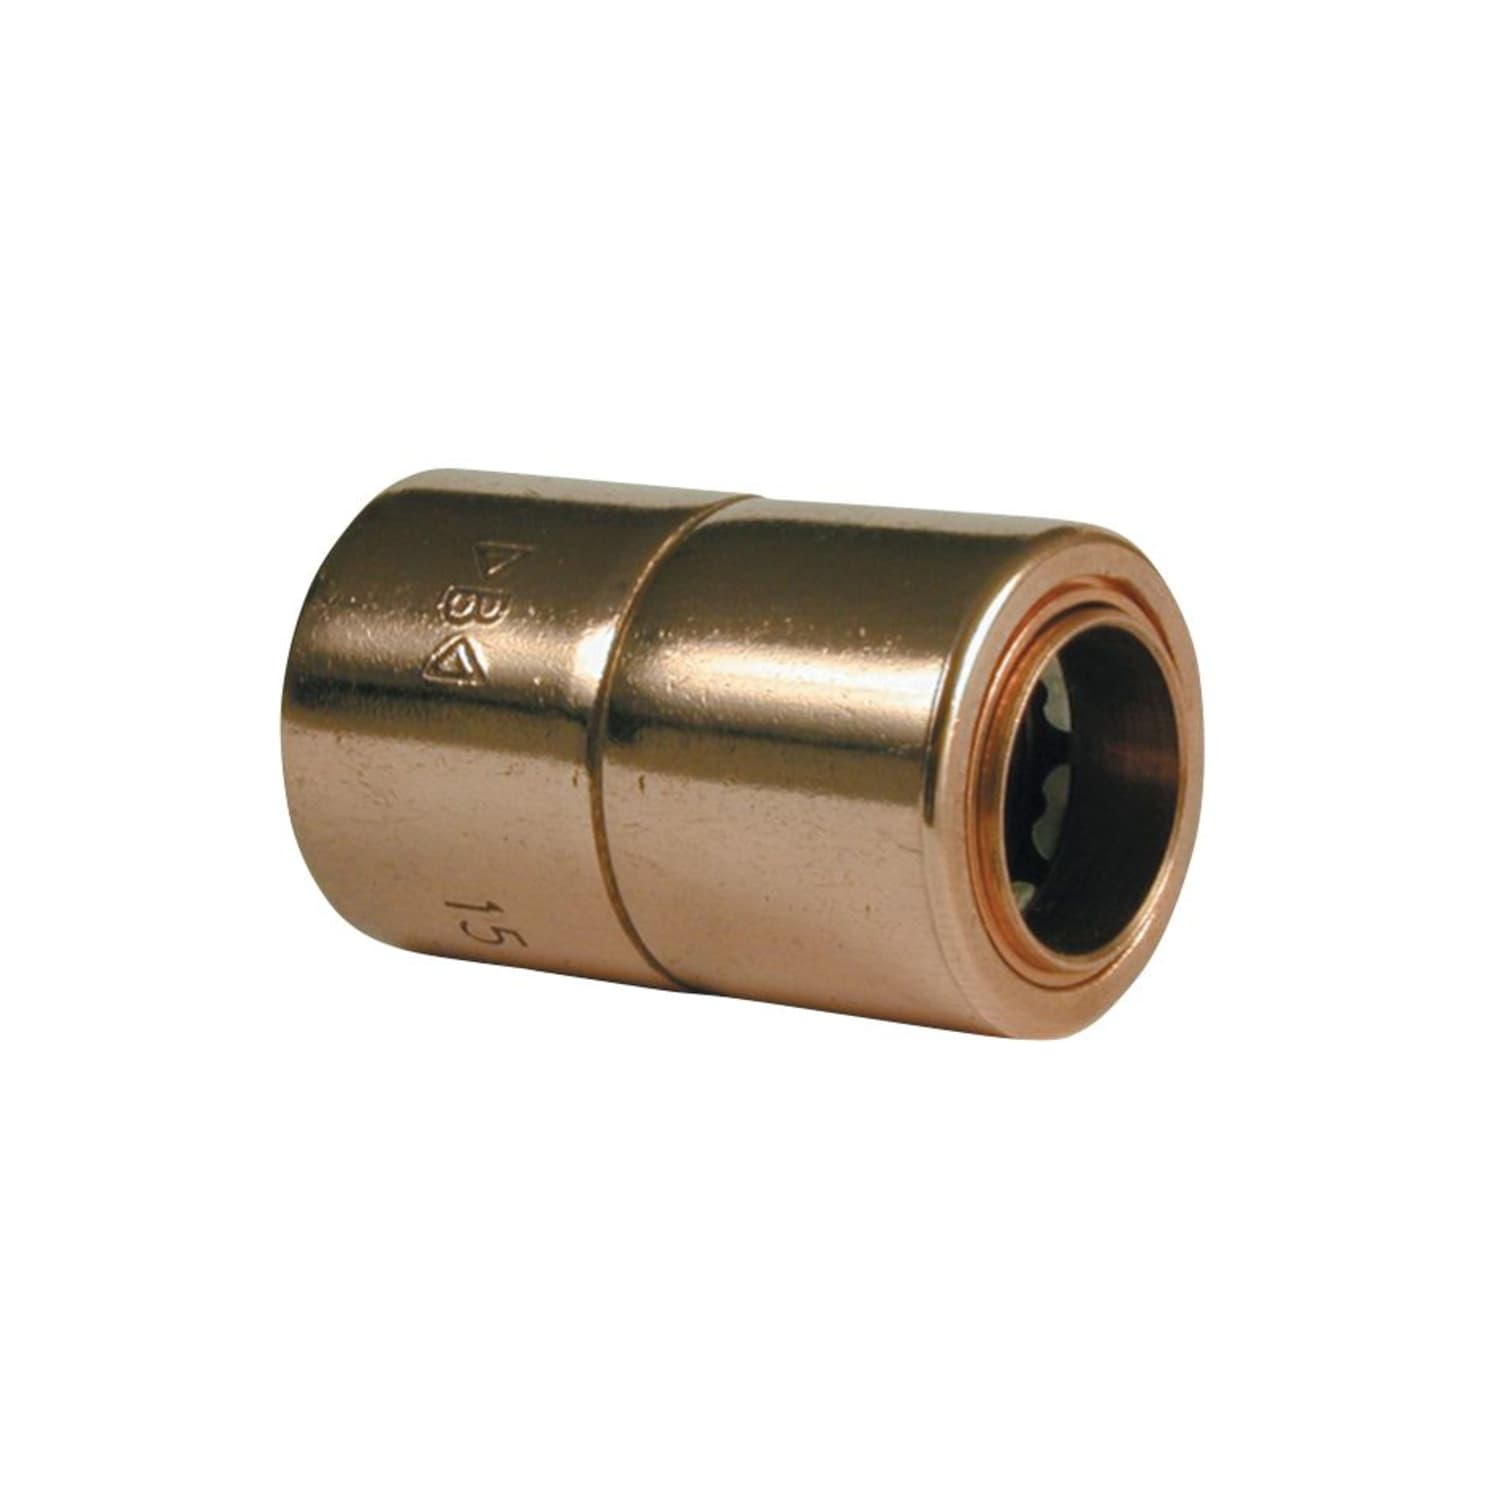 Primaflow Copper Pushfit Equal Tee - 15mm